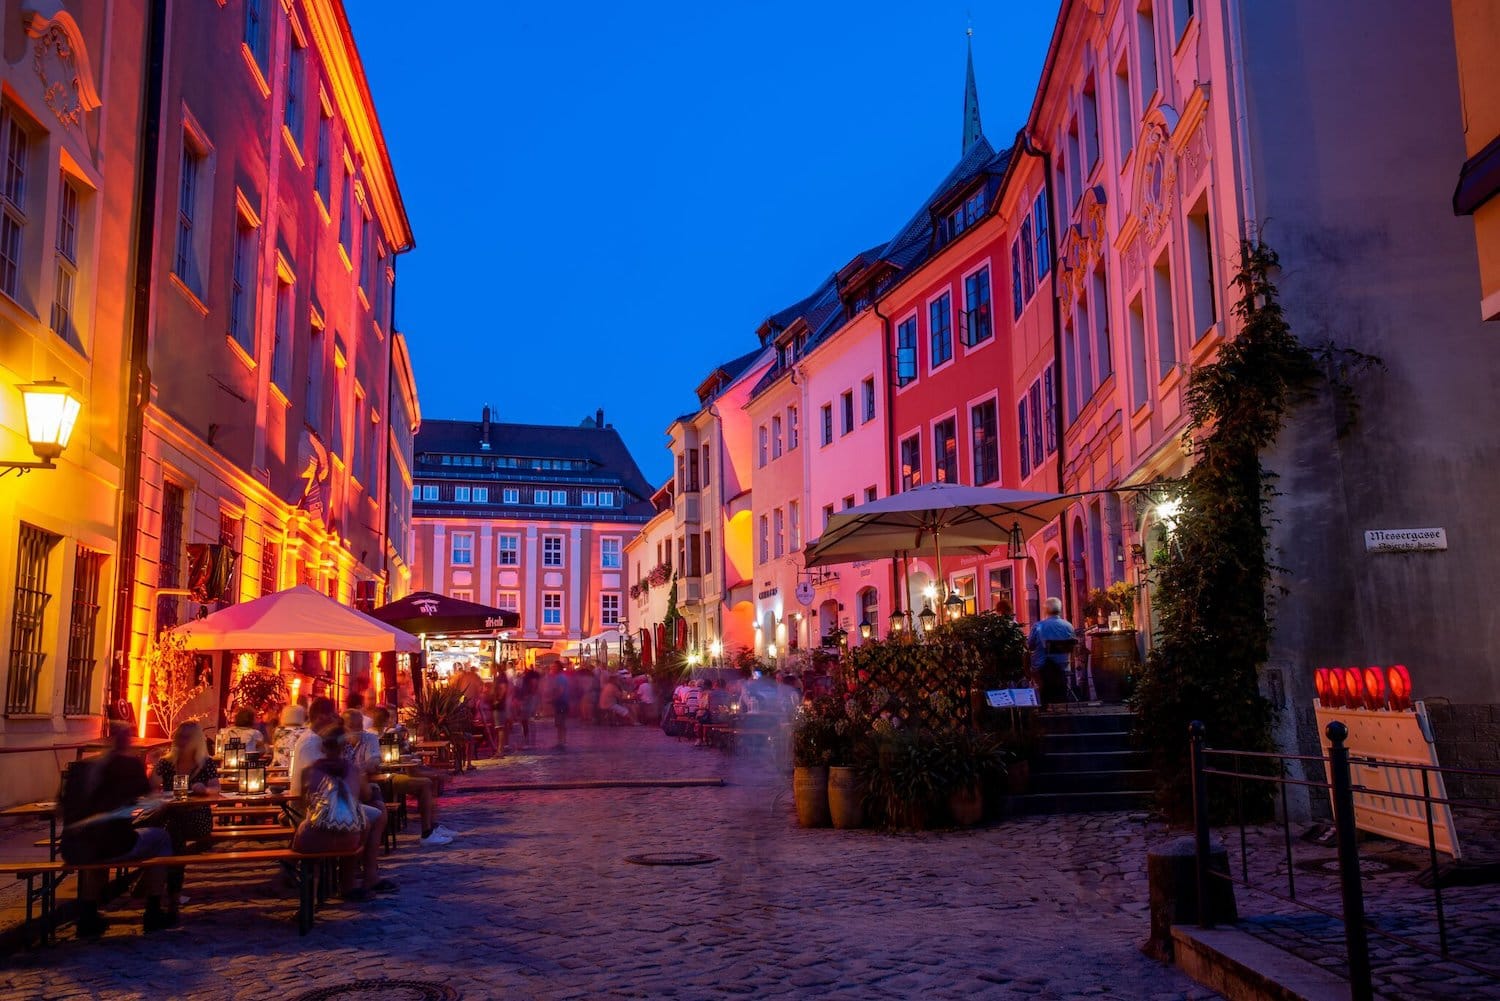 Altstadtfestival in Bautzen. Kleurrijke lichtjes verlichten de muren van huizen in de oude binnenstad van Bautzen.